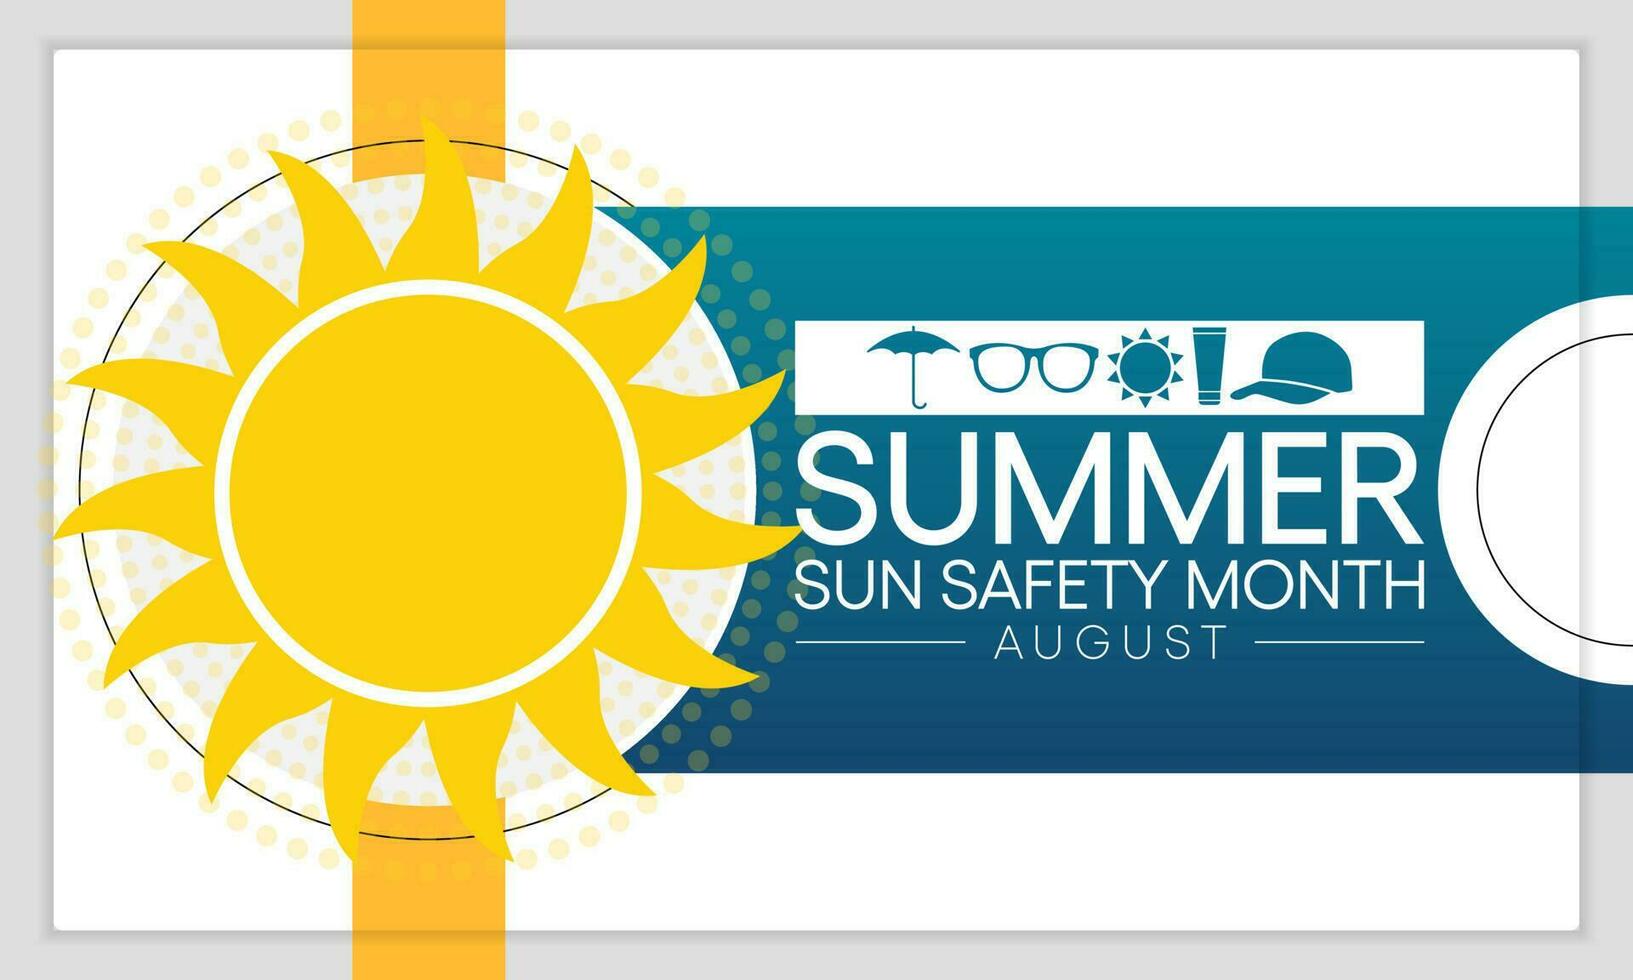 zomer zon veiligheid maand is opgemerkt elke jaar in augustus, gevierd naar bewust over sommige van de schadelijk Effecten van ultraviolet uv blootstelling, en tips naar helpen beschermen mensen gedurende de zomer maanden. vector